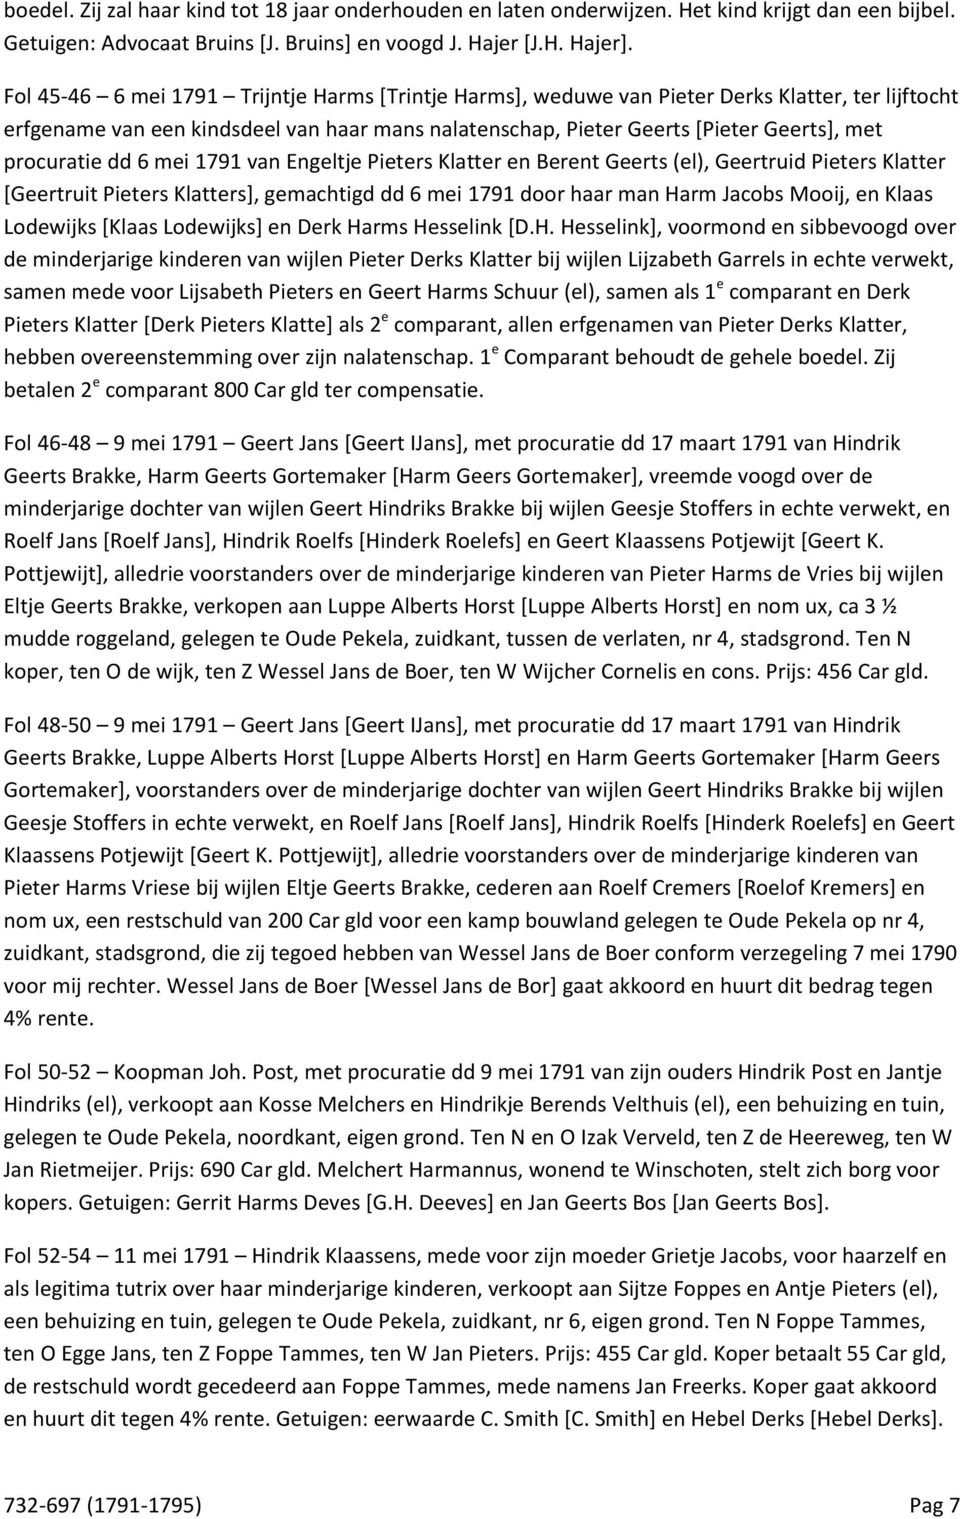 procuratie dd 6 mei 1791 van Engeltje Pieters Klatter en Berent Geerts (el), Geertruid Pieters Klatter [Geertruit Pieters Klatters], gemachtigd dd 6 mei 1791 door haar man Harm Jacobs Mooij, en Klaas